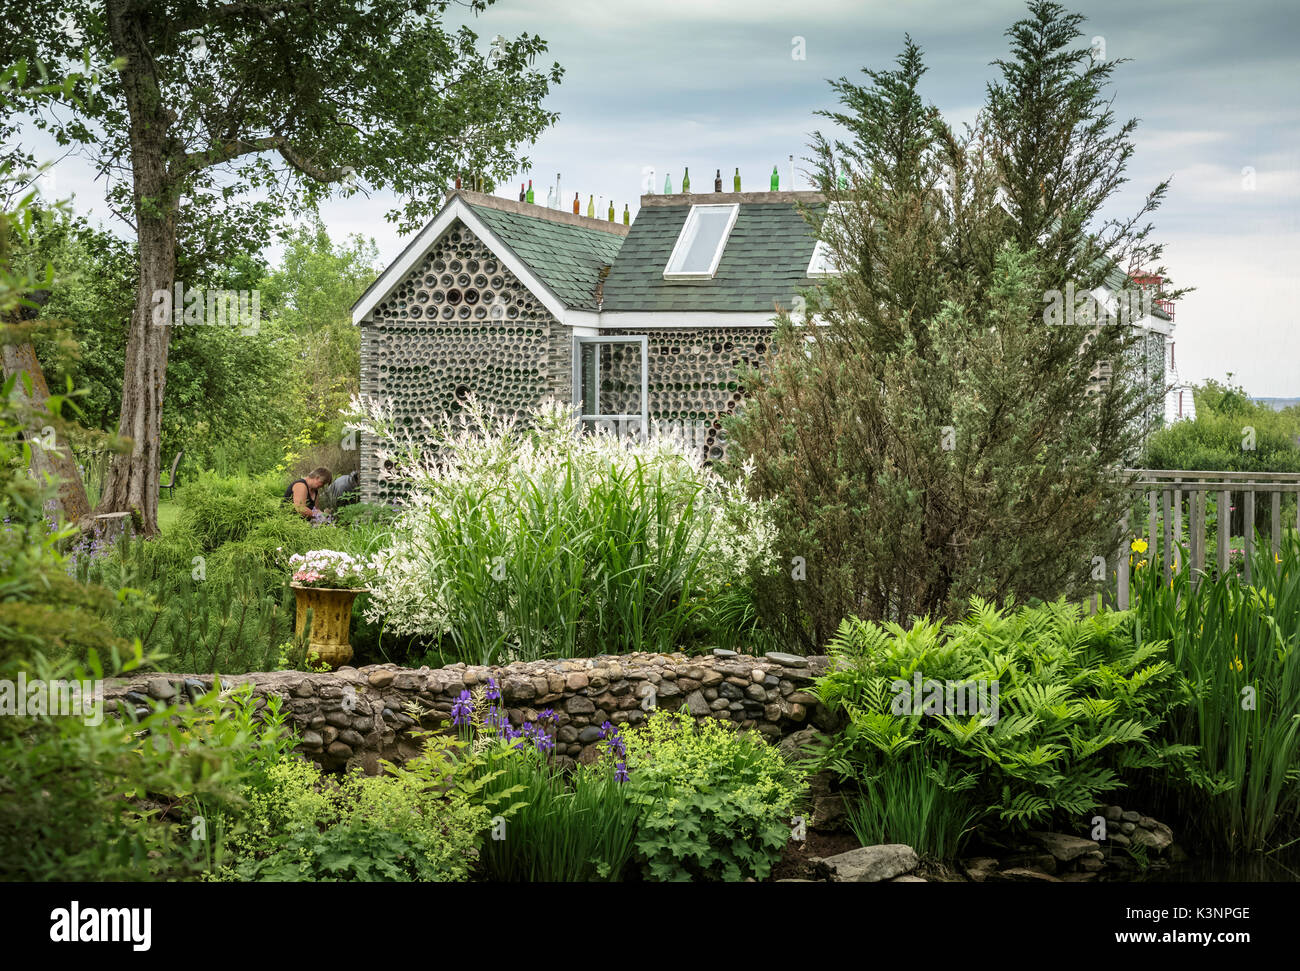 De beaux jardins à la bouteille des maisons, une attraction touristique de l'Île du Prince Édouard, Canada Banque D'Images